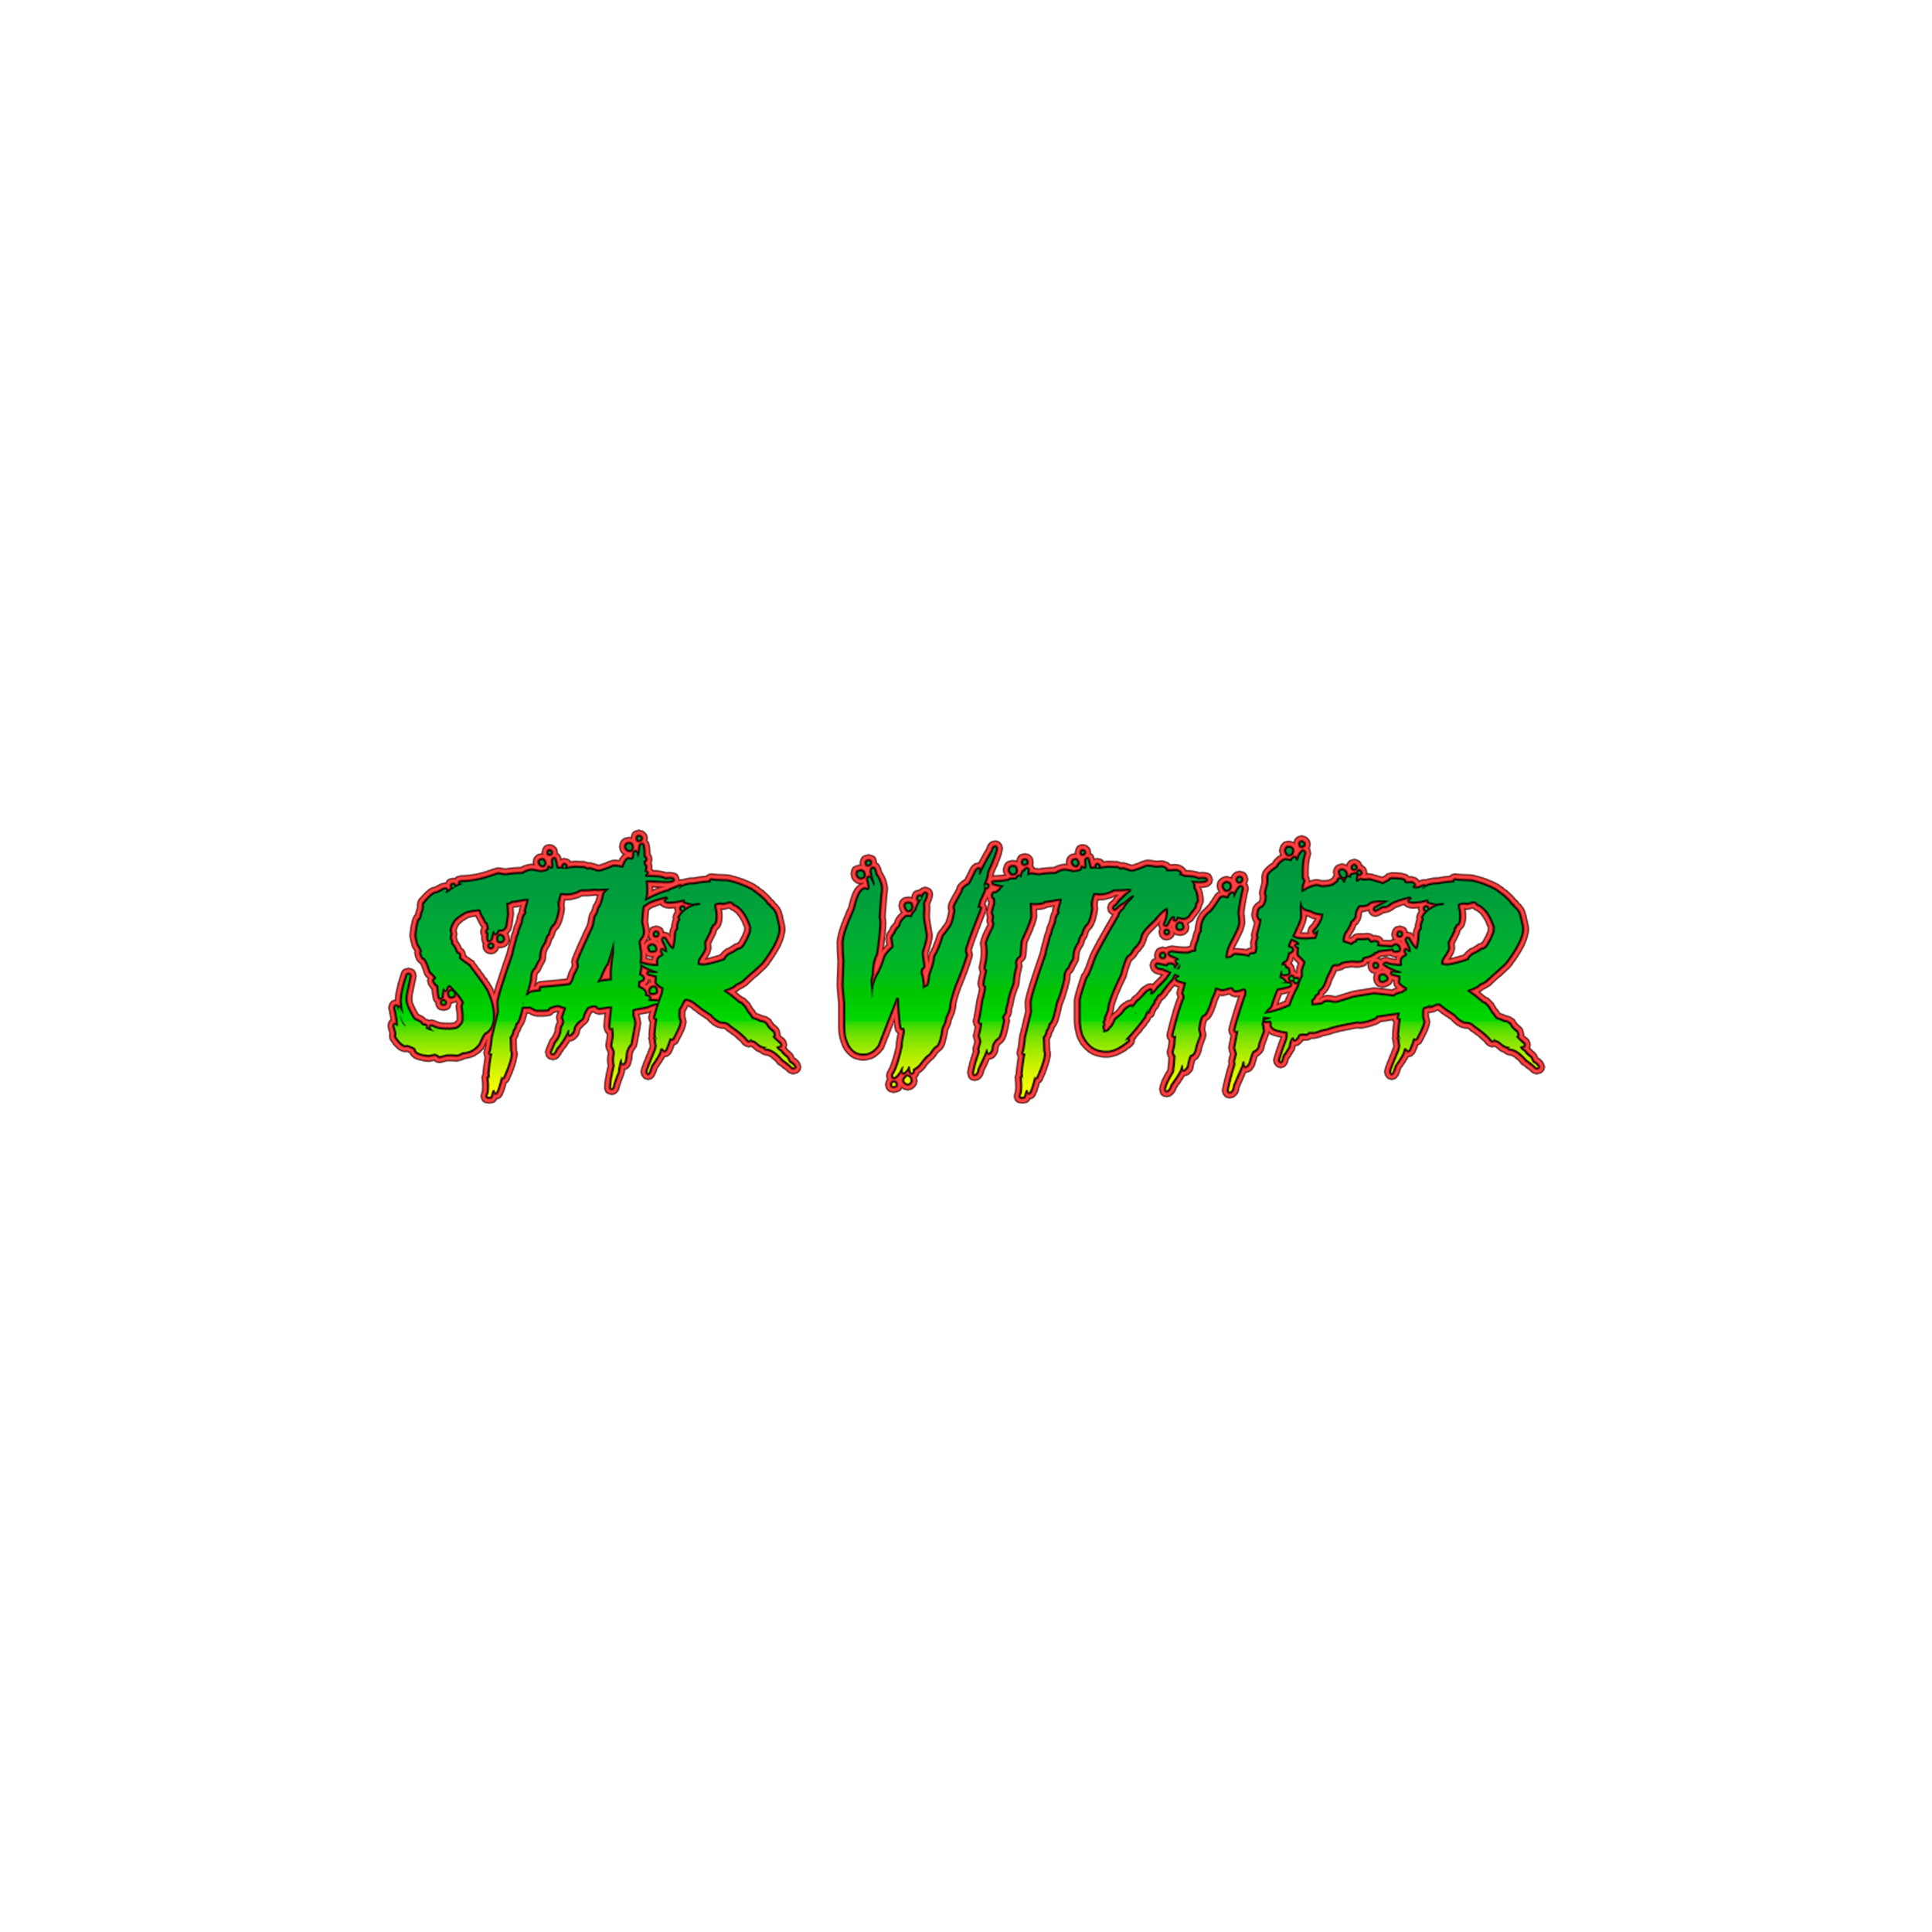 Star Witcher logo